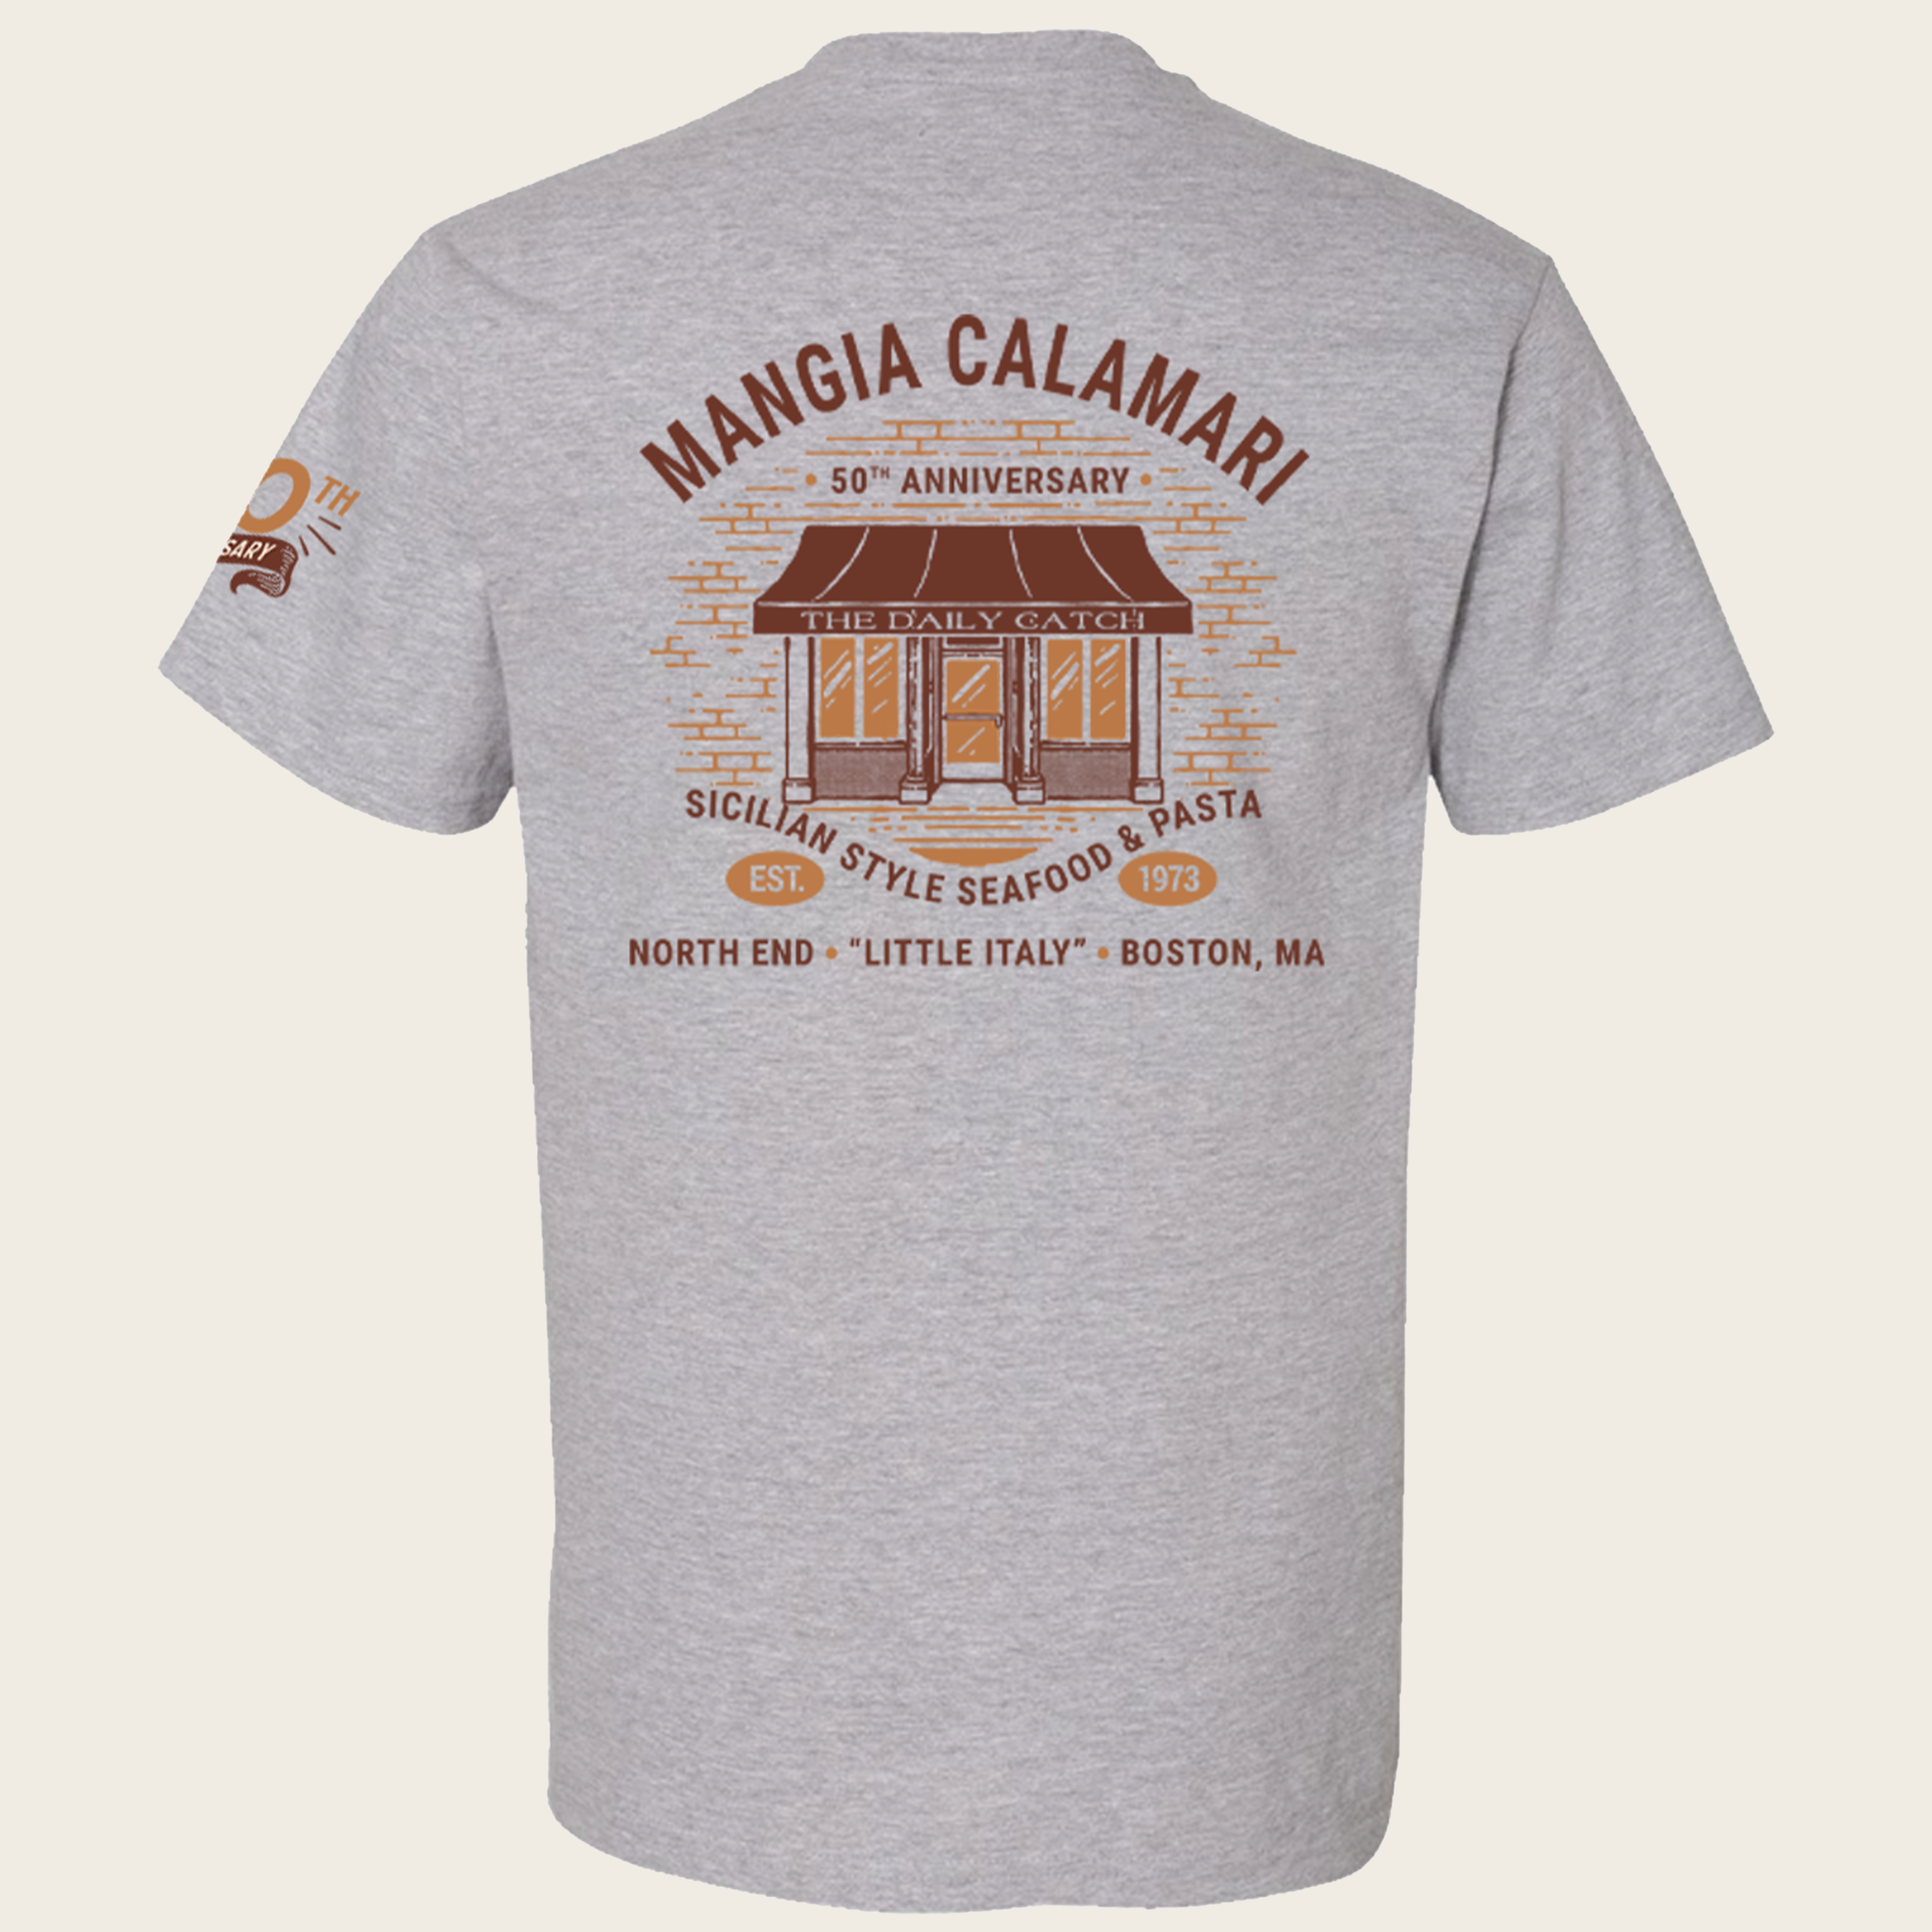 Calamari Cafe T-Shirt